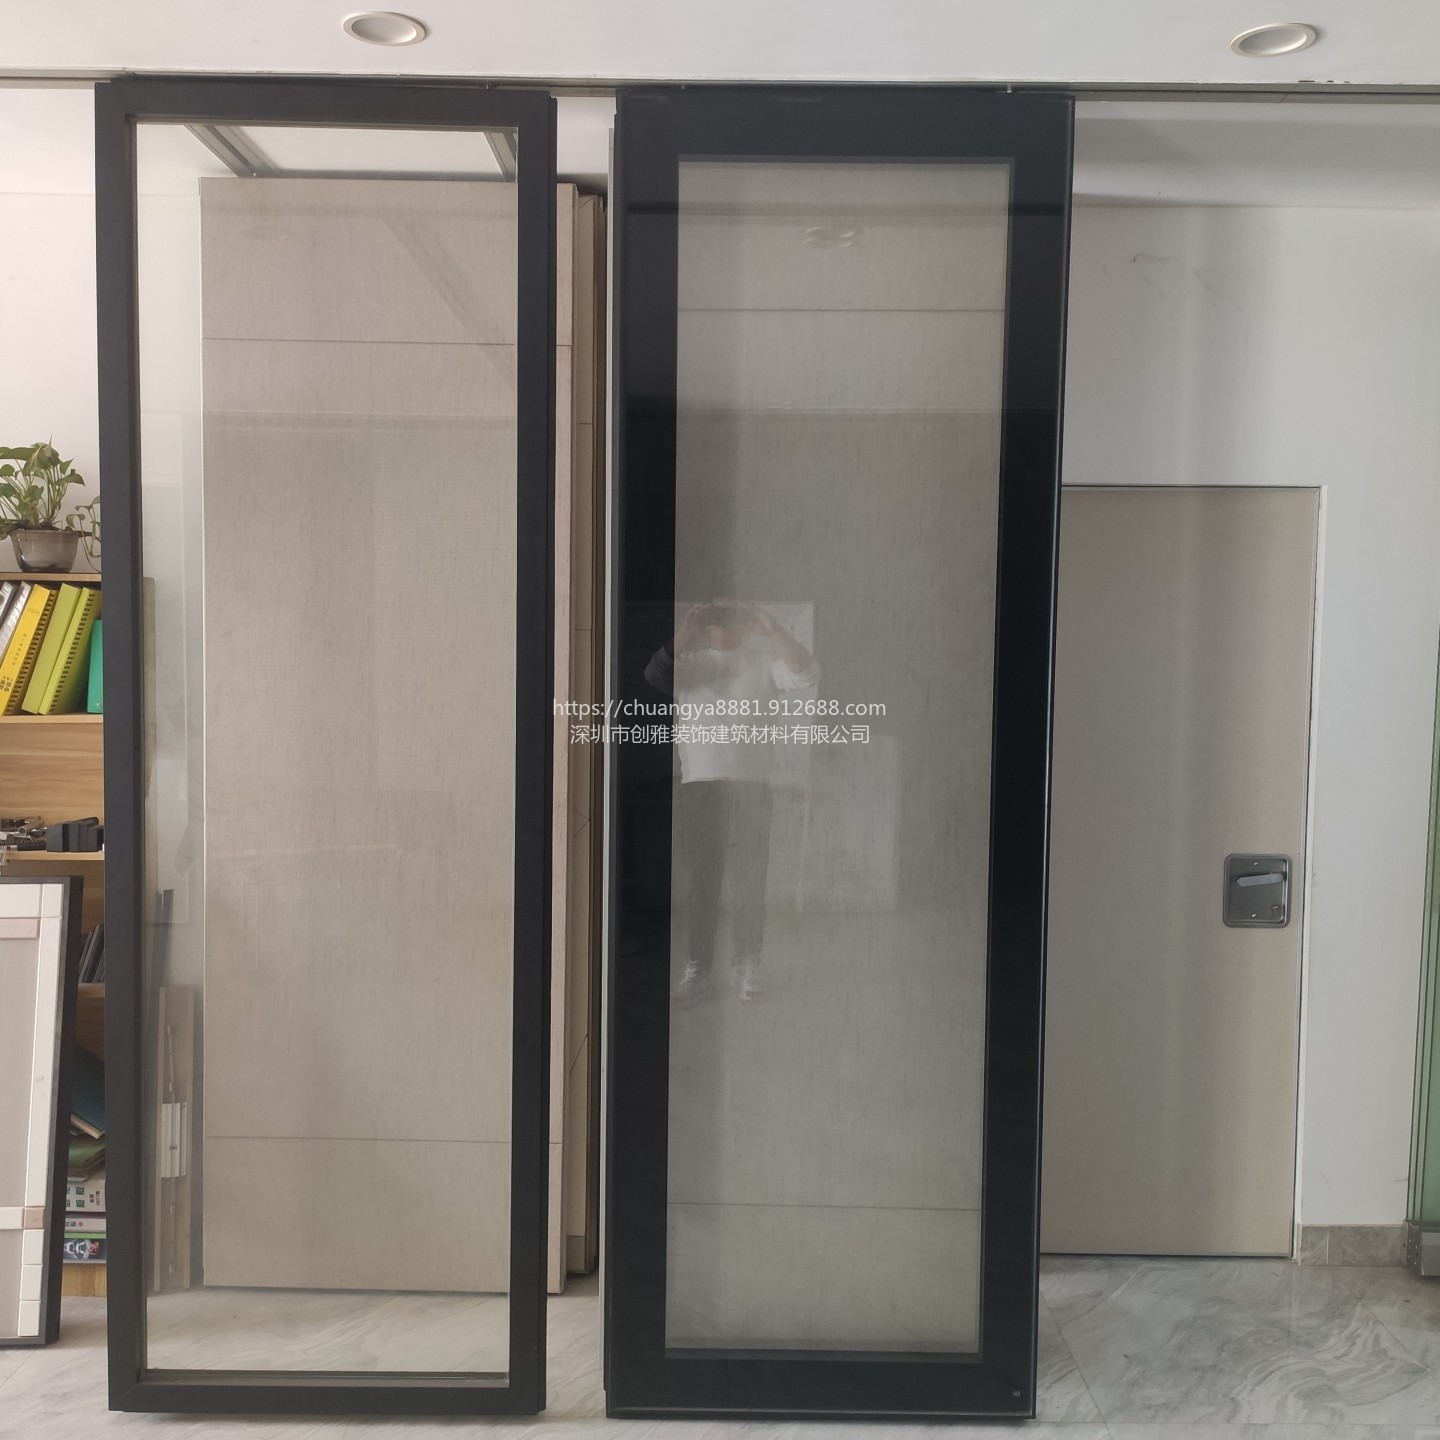 深圳市创雅公司 主要生产活动屏风隔断墙玻璃移动折叠屏风多种型号可选择65型85型100型玻璃单玻双玻隔音环保安全防火